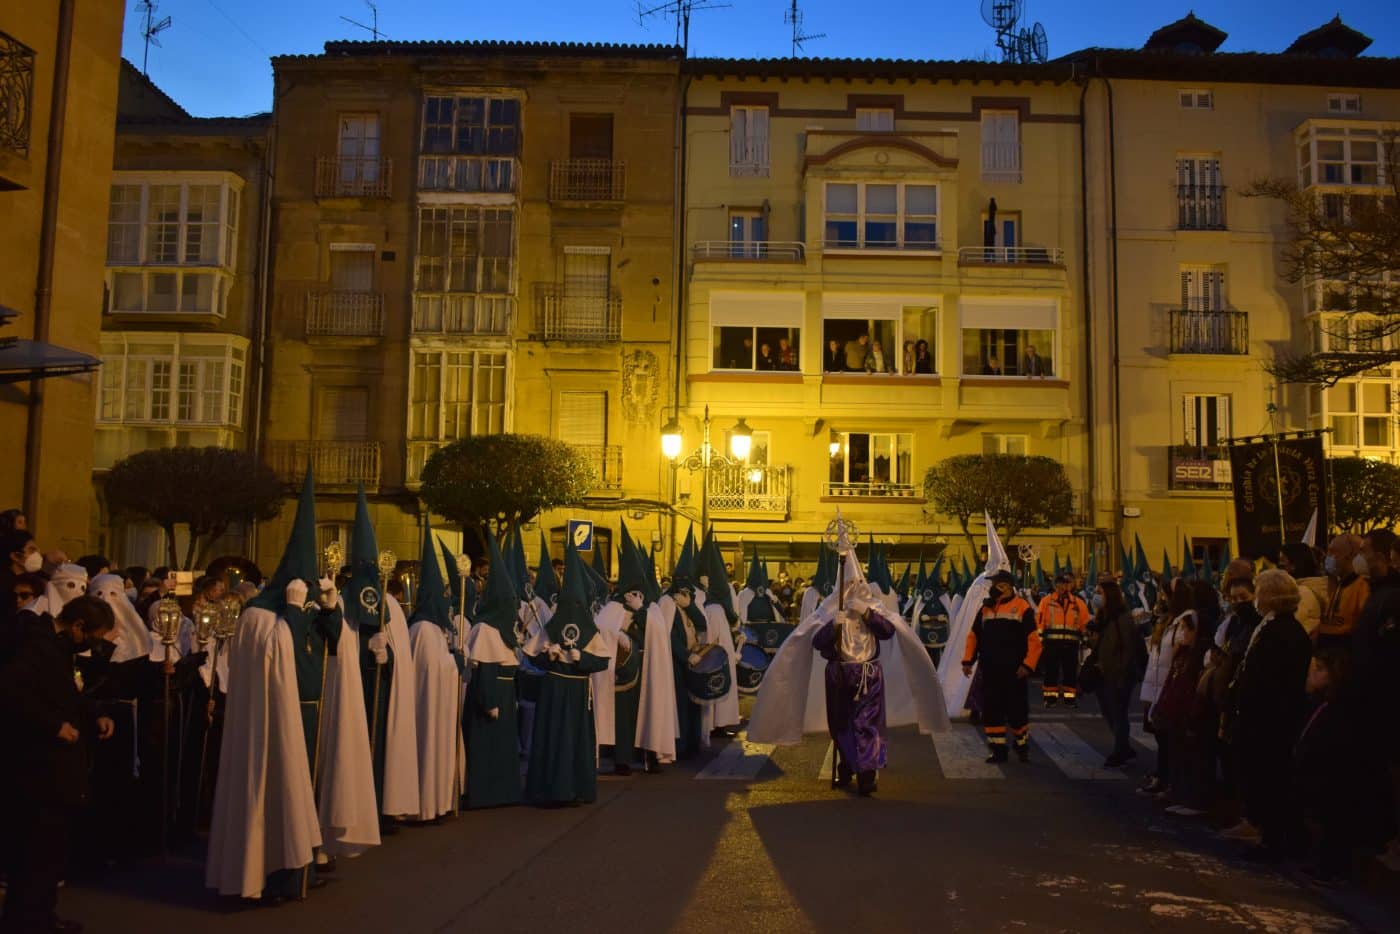 La procesión del Encuentro regresa a las calles de Haro 31